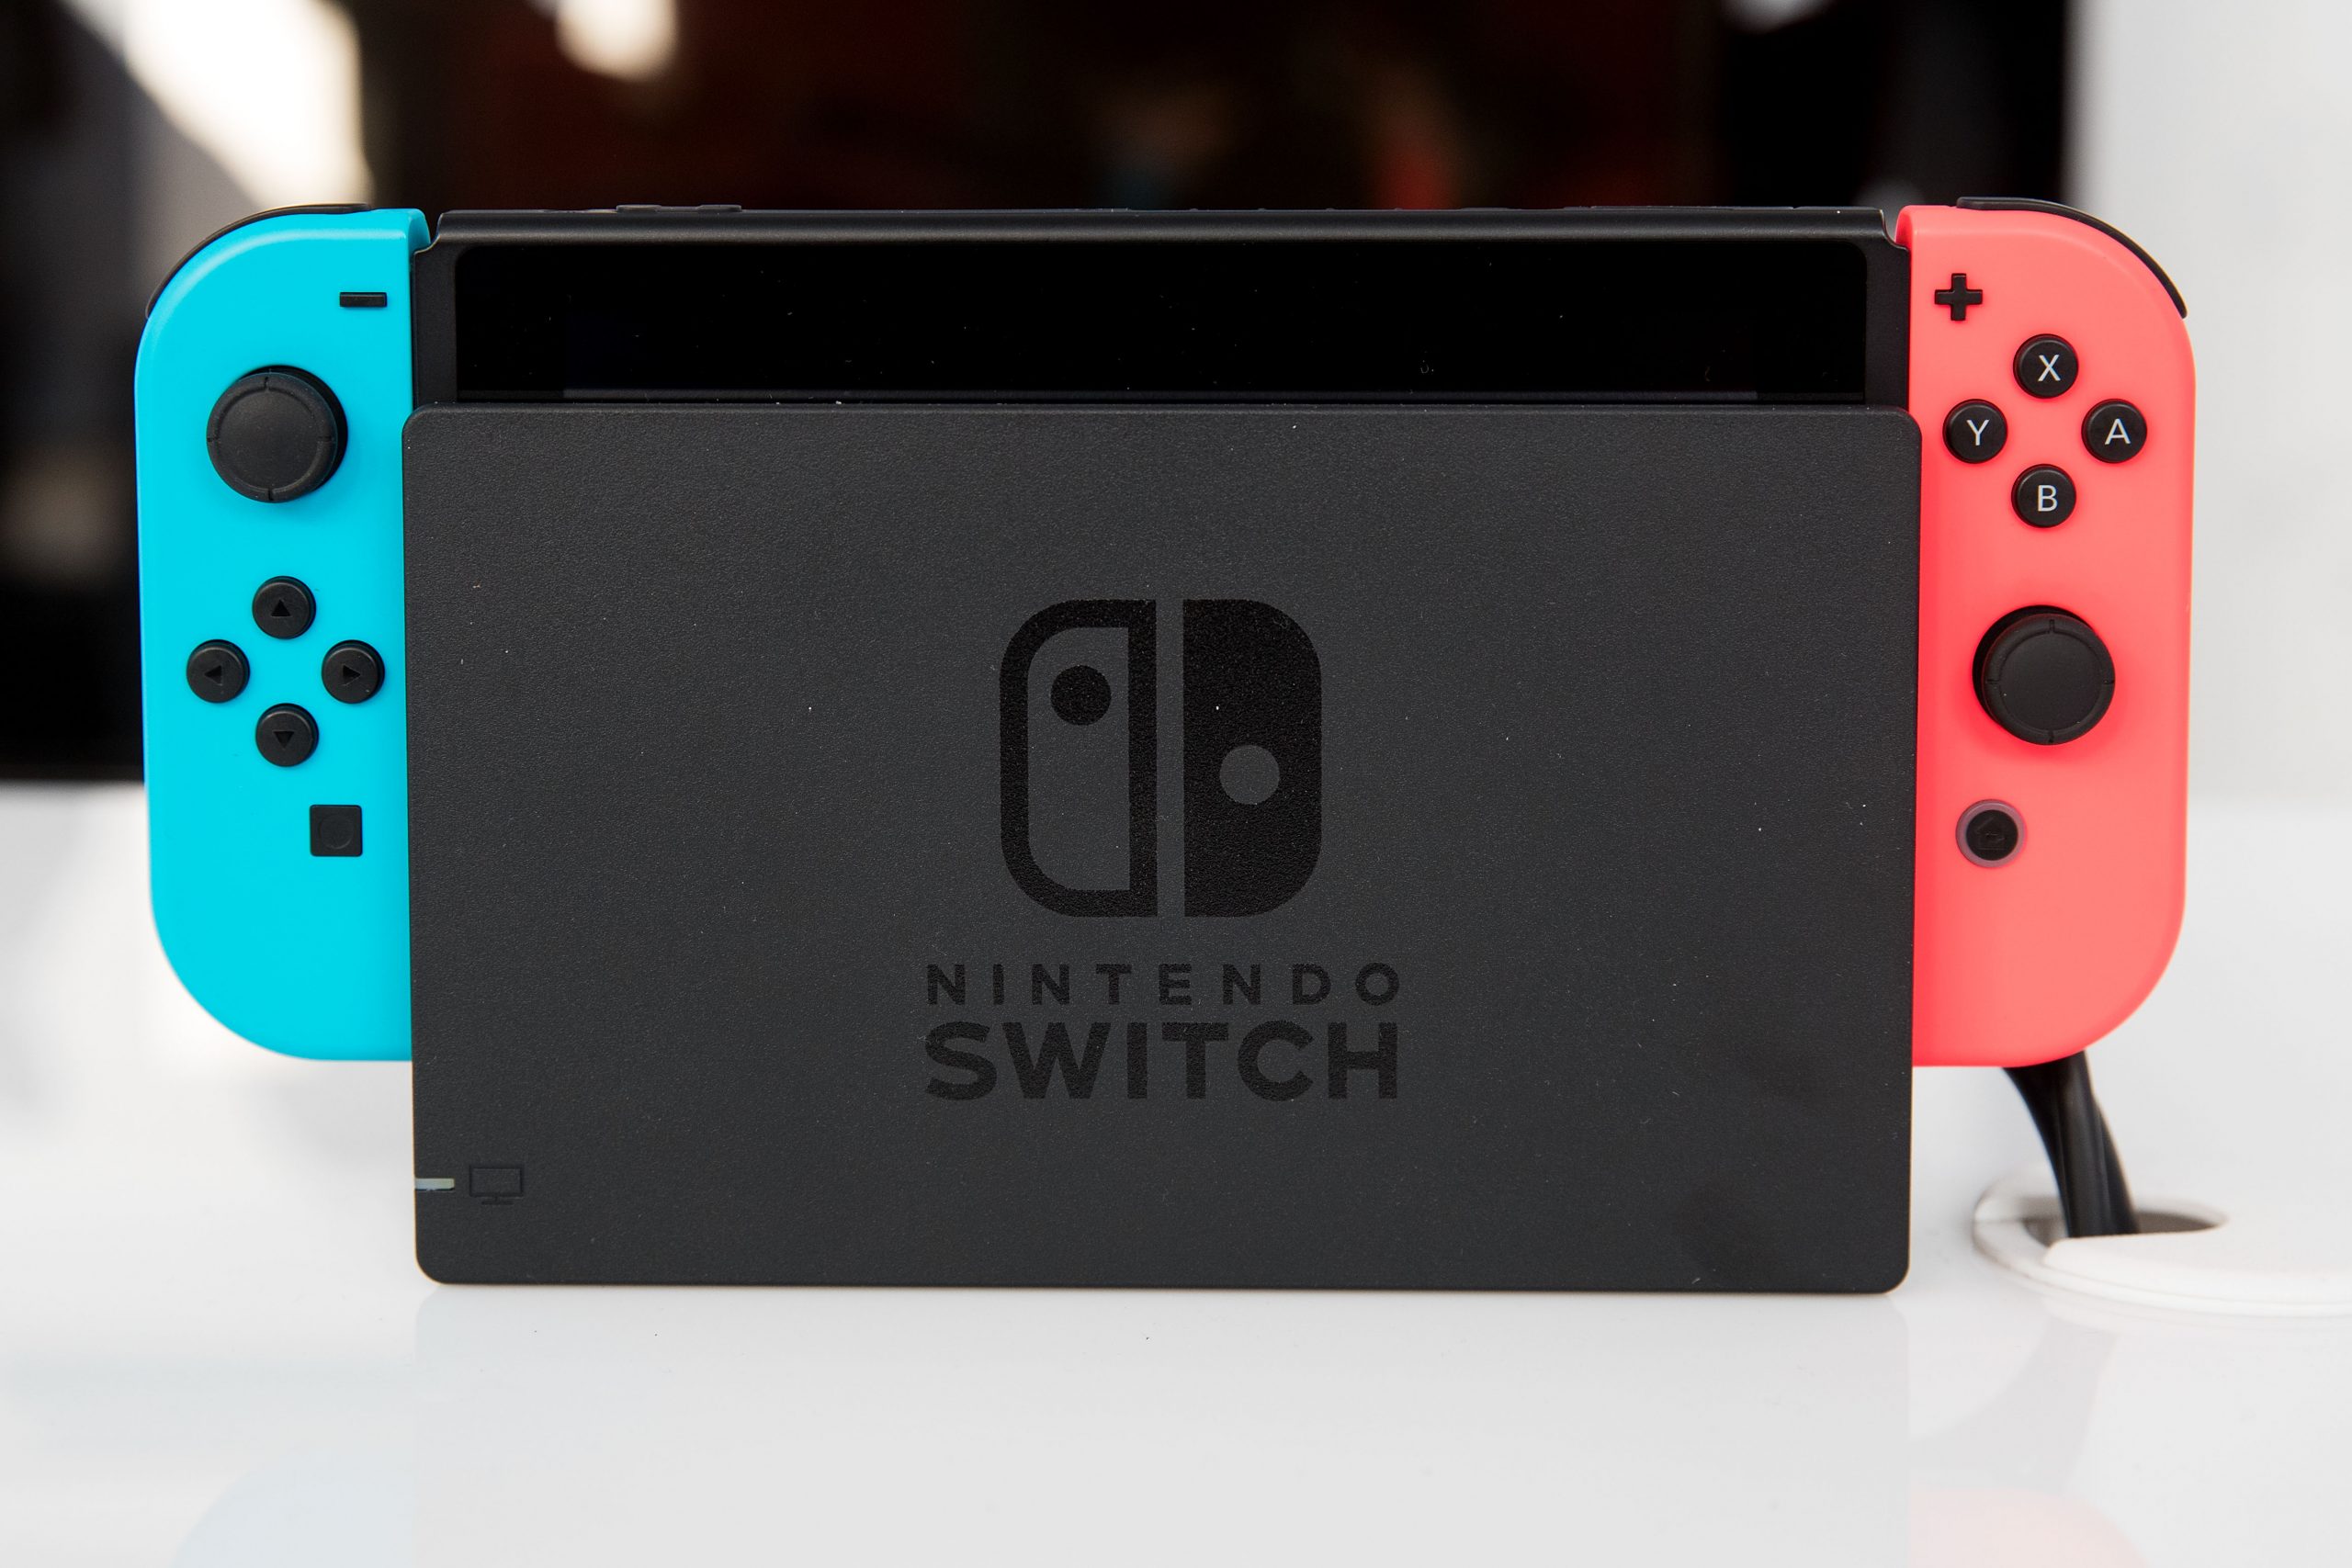 ¡Nintendo Switch se convierte en una de las consolas más vendidas de Nintendo!